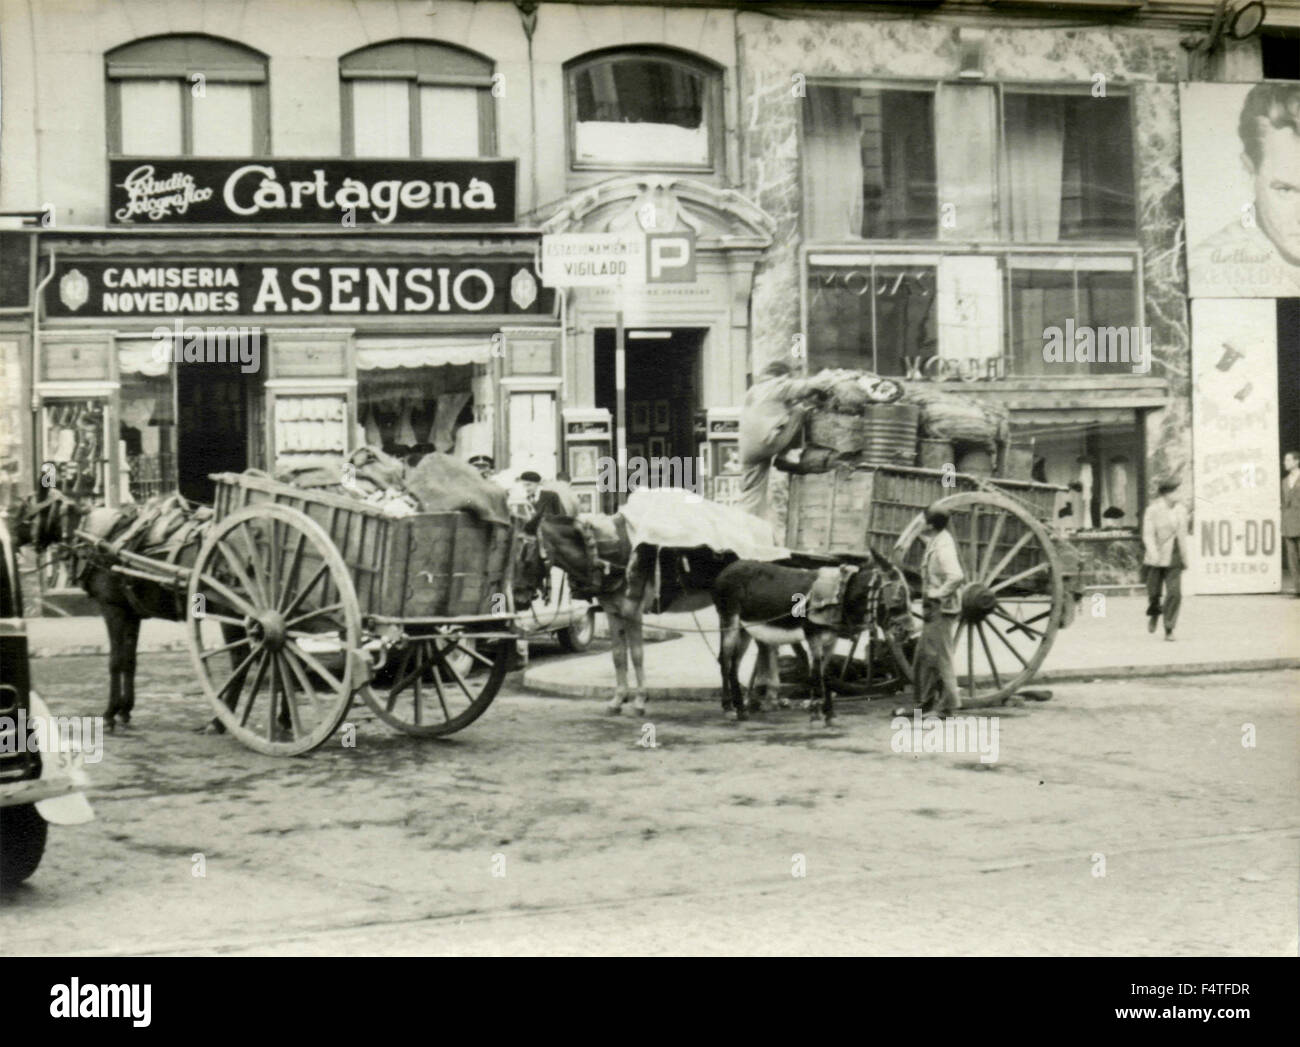 Deux chariots tirés par le transport de marchandises à Cartagena, Espagne Banque D'Images